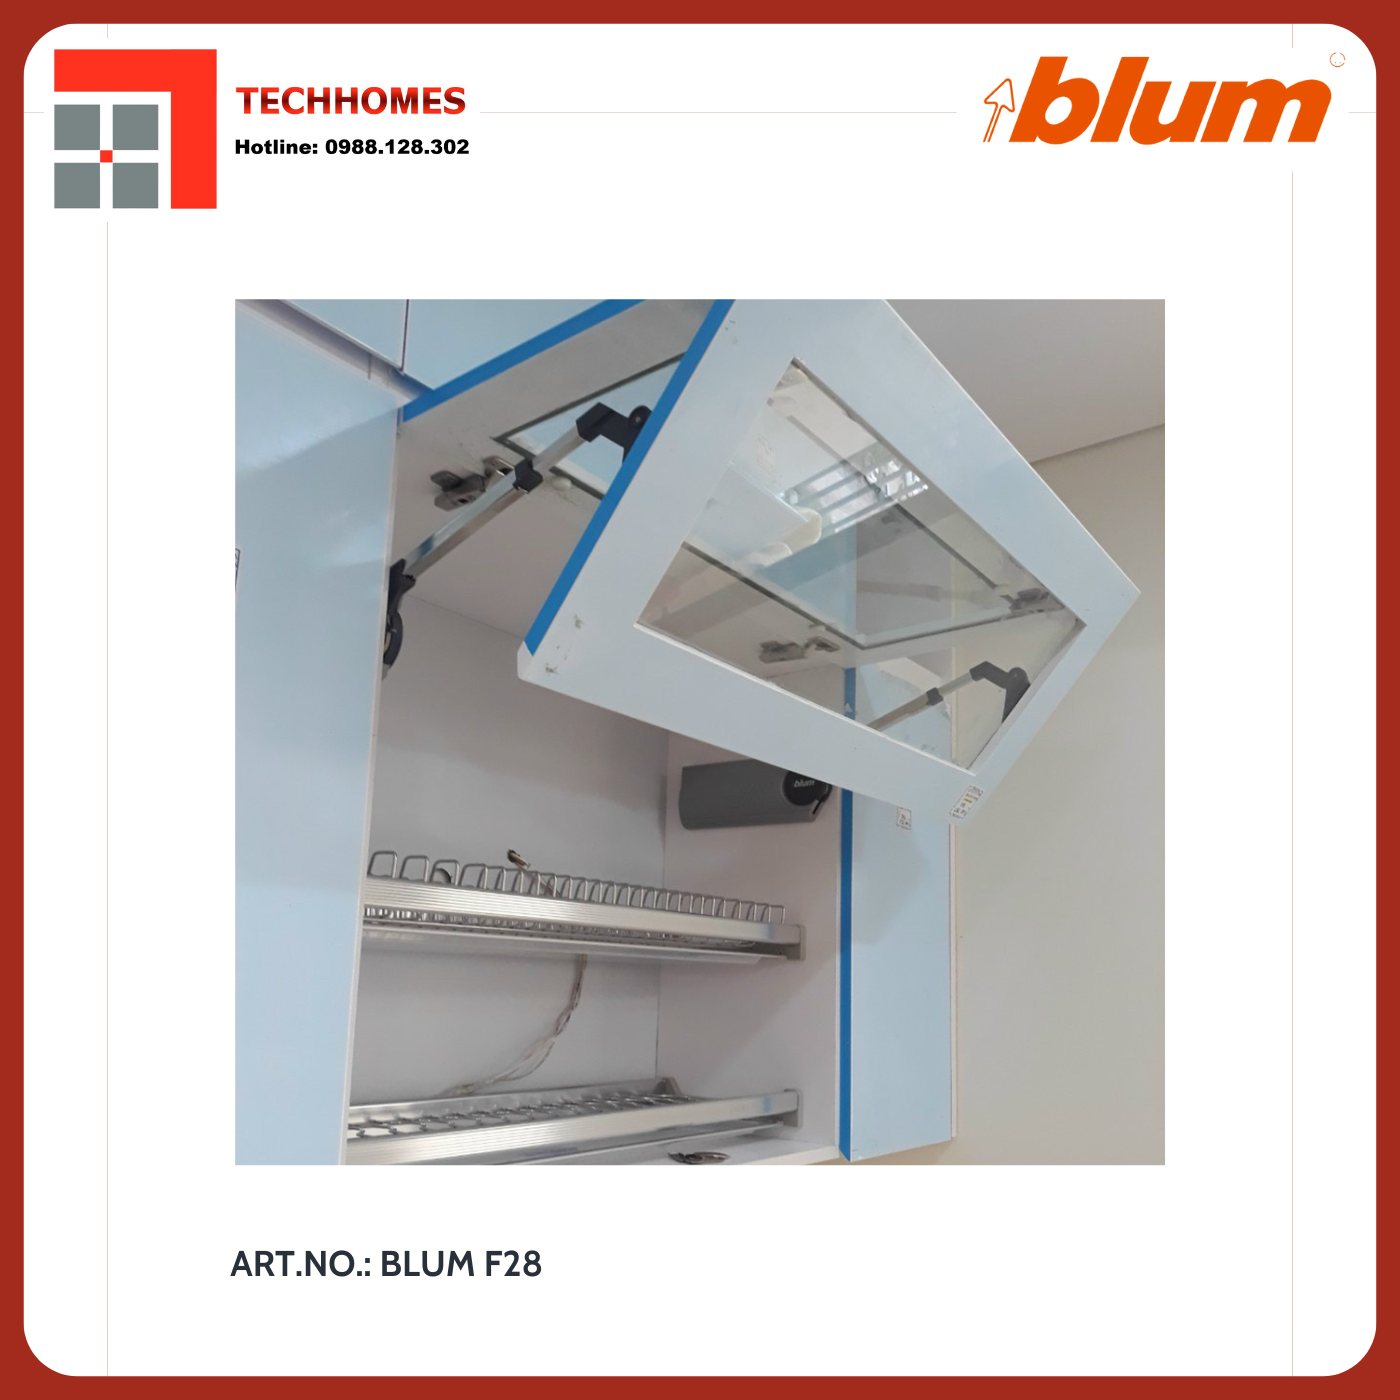 TAY NÂNG BLUM HF28 trọn bộ tay nâng Blum f28 nhập khẩu chính hãng Áo  - Blum f28